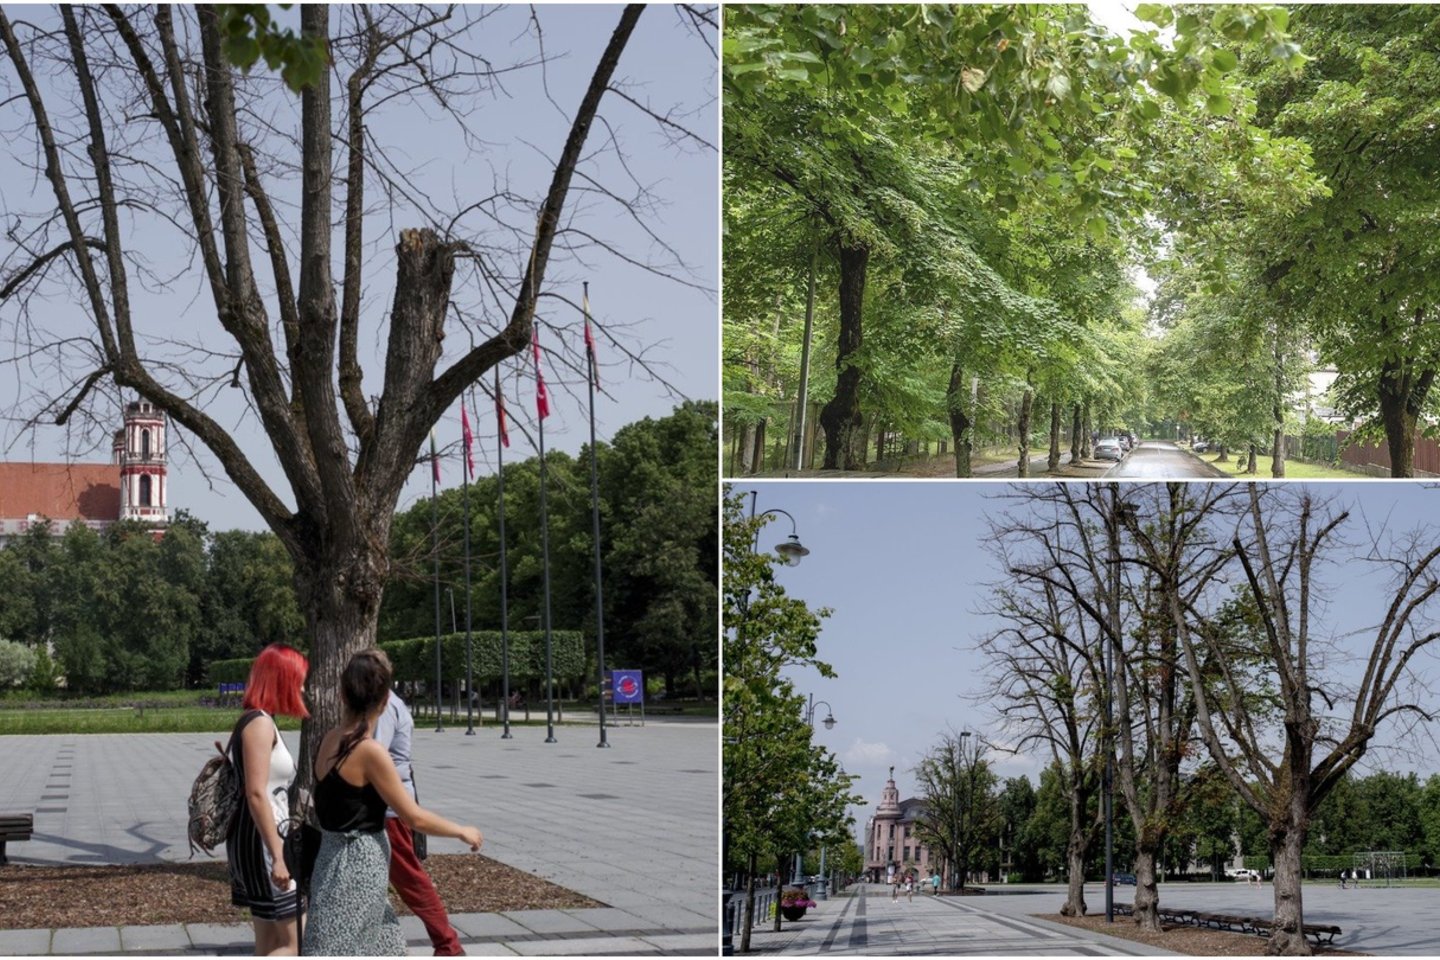 Ilgus metus Vilniaus mieste vyko ne medžių priežiūra, o tiesiog nesiskaitymas su jais.